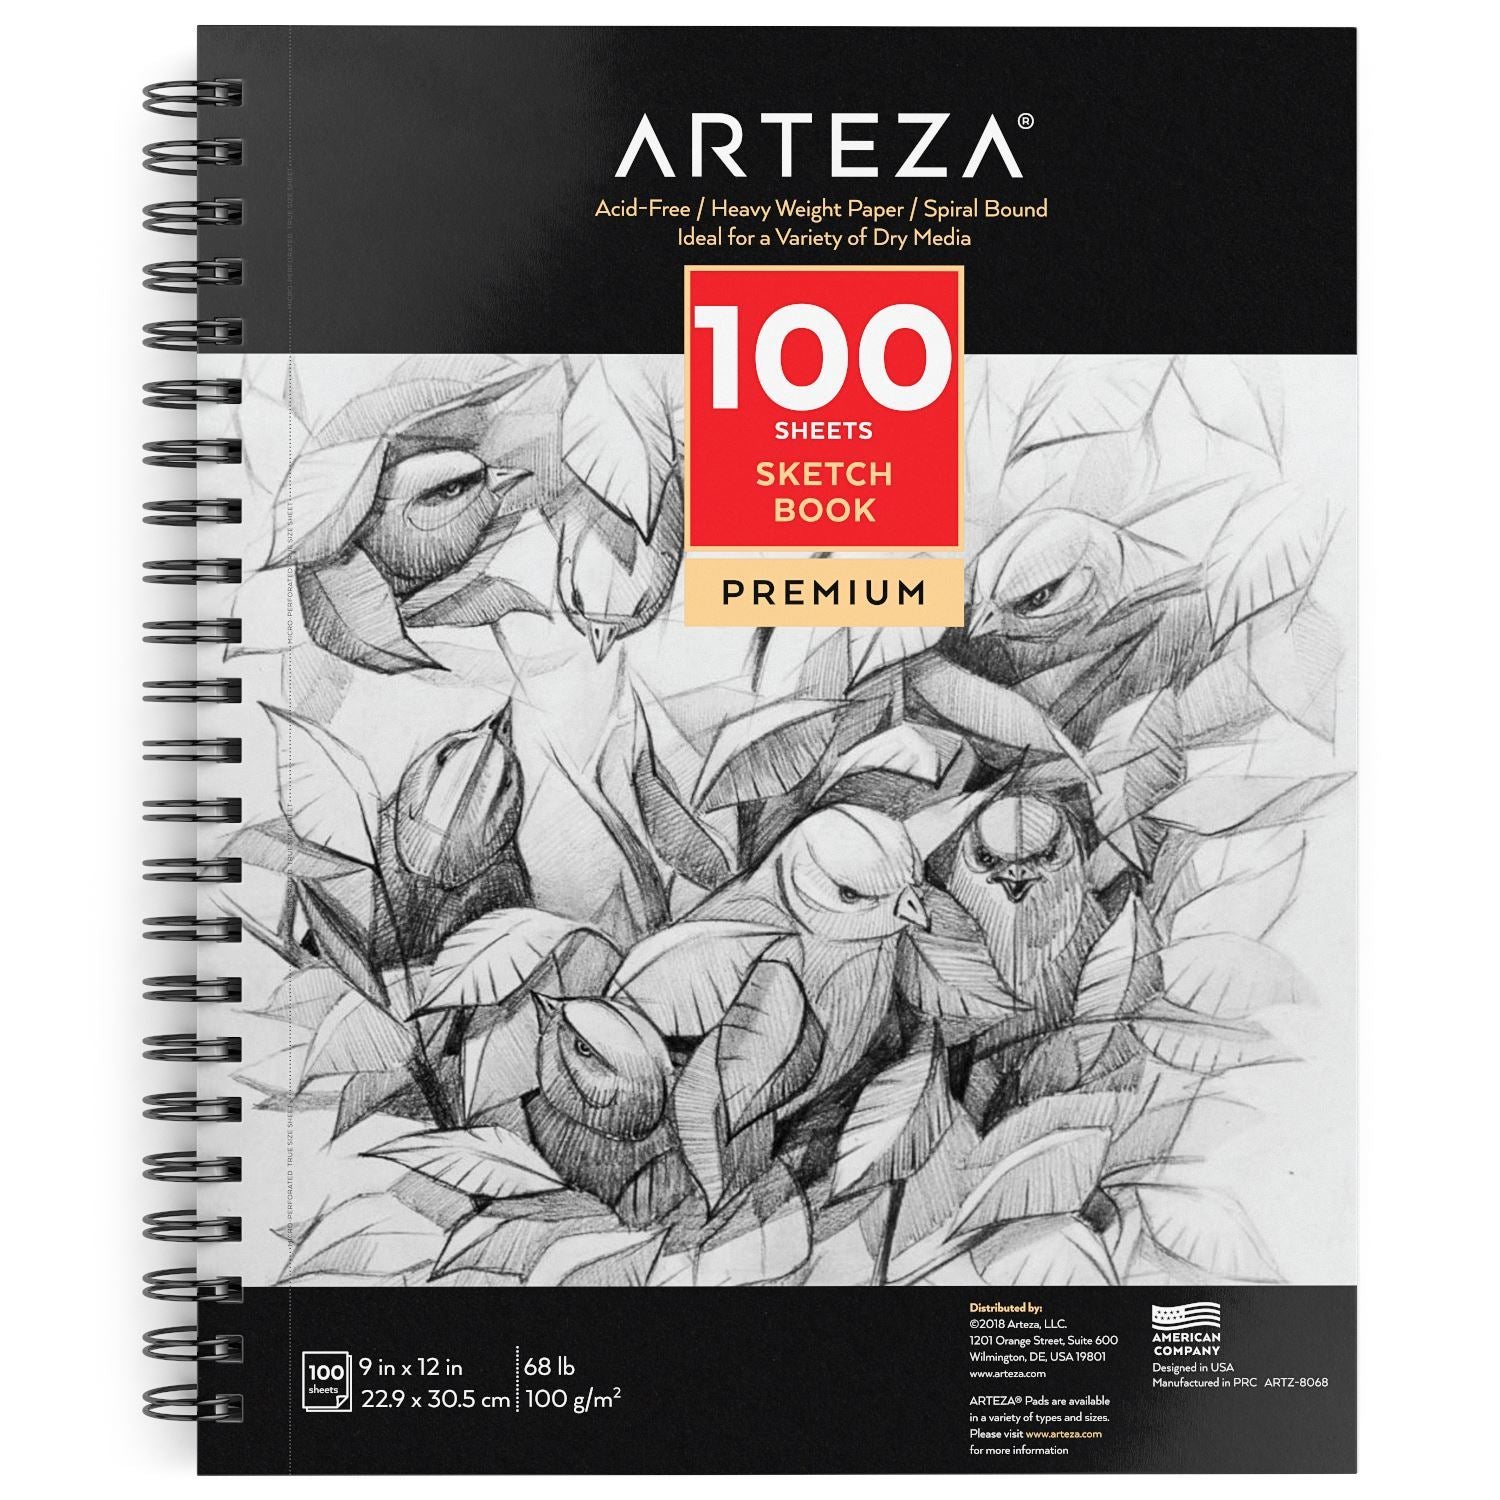 http://arteza.com/cdn/shop/products/sketchbook-9-x-12-in-100-sheets_k8vwnk4A.jpg?v=1652891648